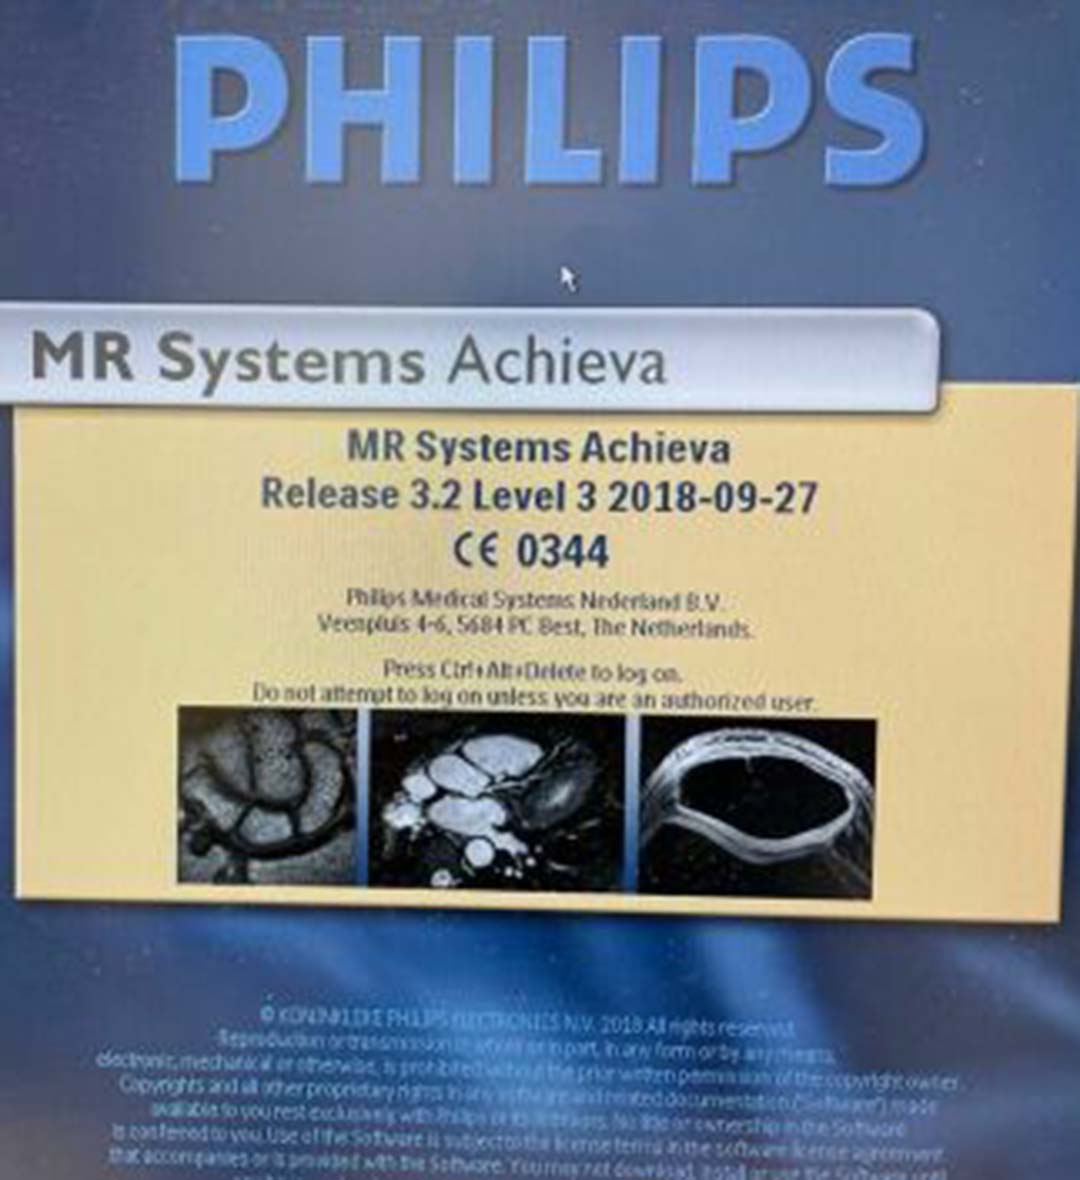 2005 Philips Achieva 1.5T MRI System